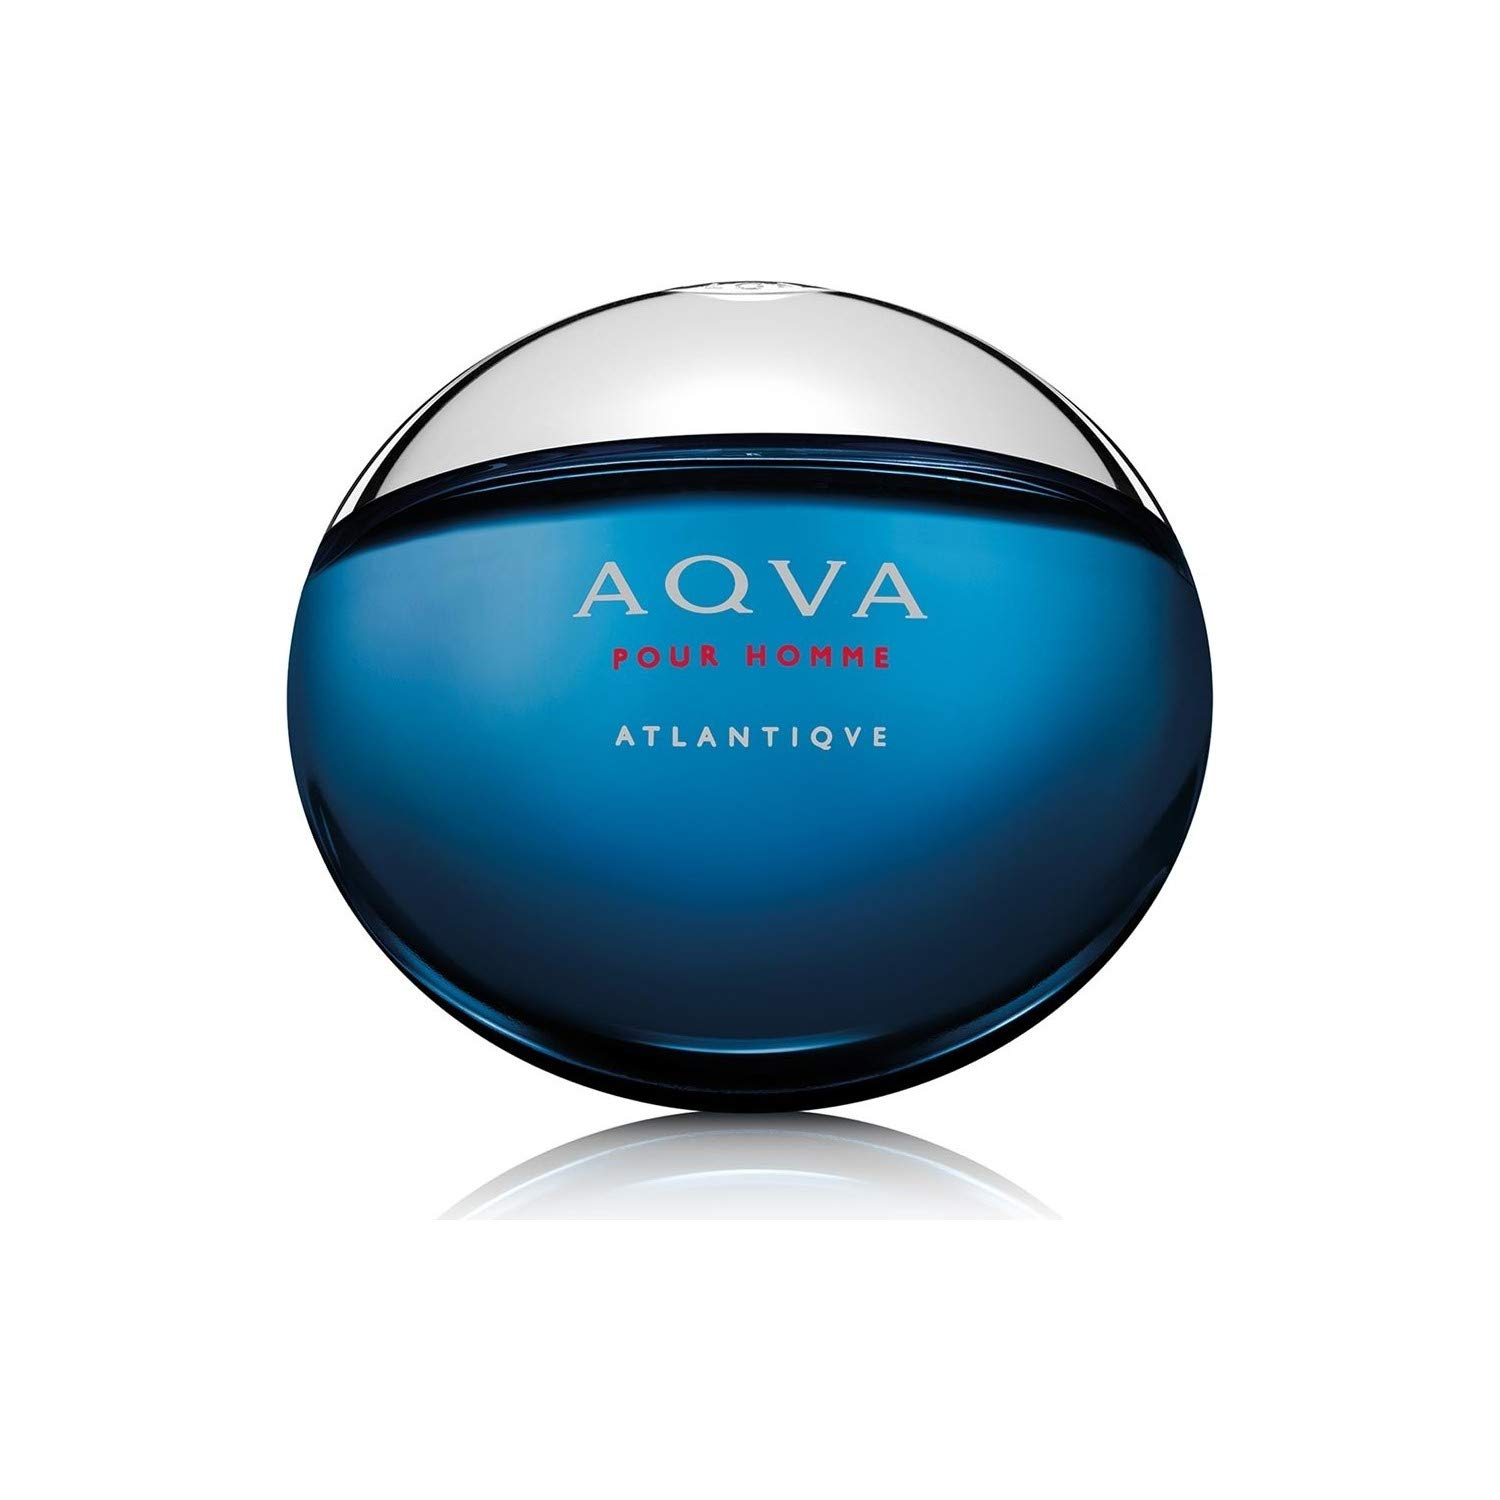 Mua Bvlgari Aqua Pour Homme Atlantic Eau De Toilette  fl oz (100 ml)  trên Amazon Nhật chính hãng 2023 | Fado